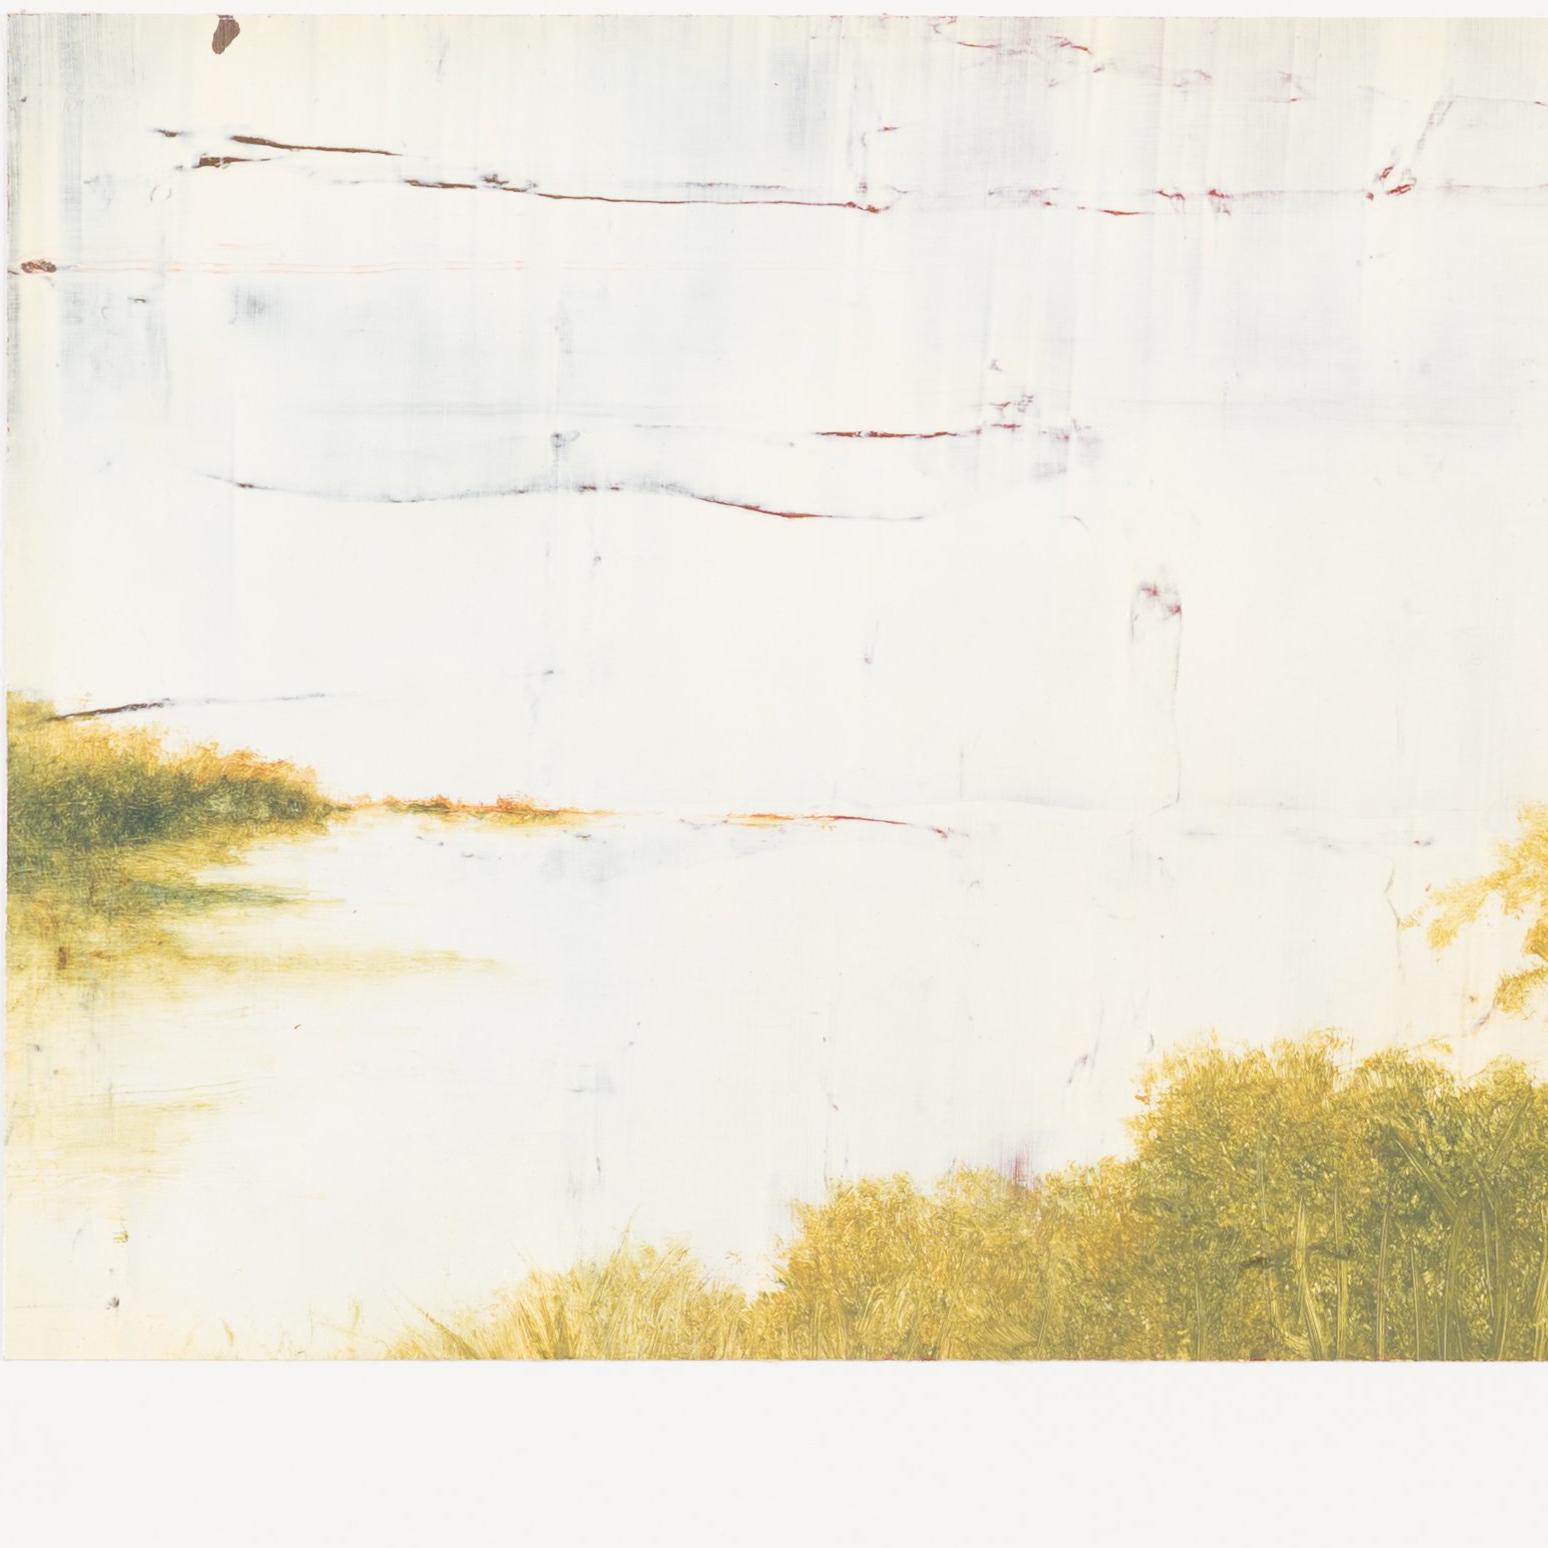 WOP 2 - 00649 - Gray Landscape Painting by Hiro Yokose